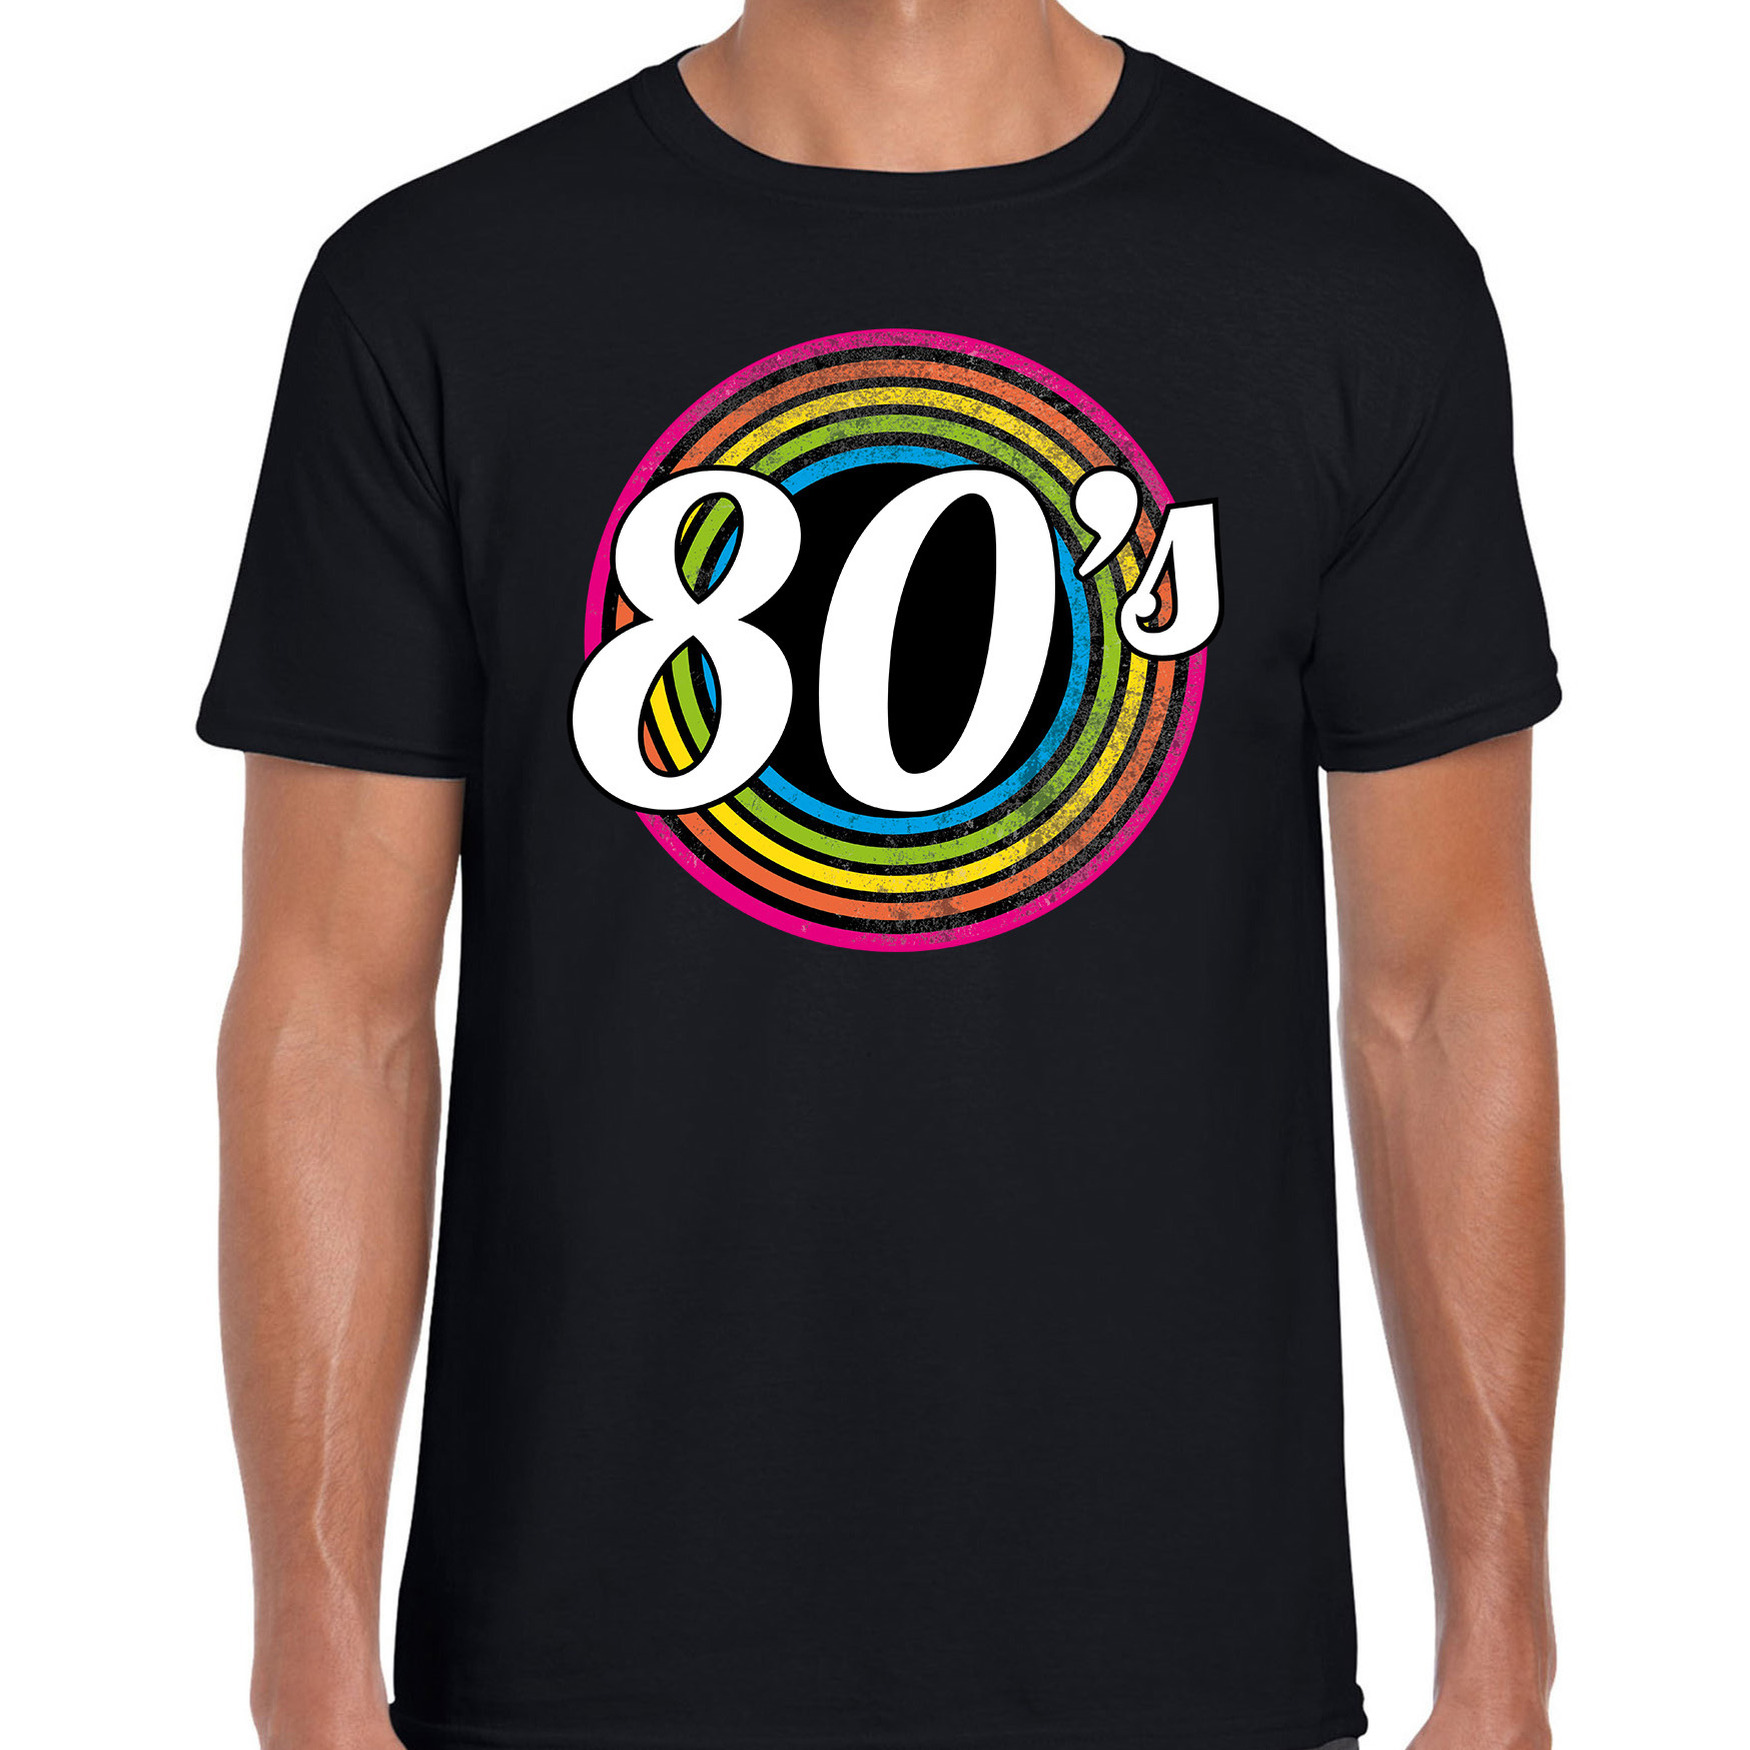 80s-eighties verkleed t-shirt zwart voor heren 70s, 80s party verkleed outfit